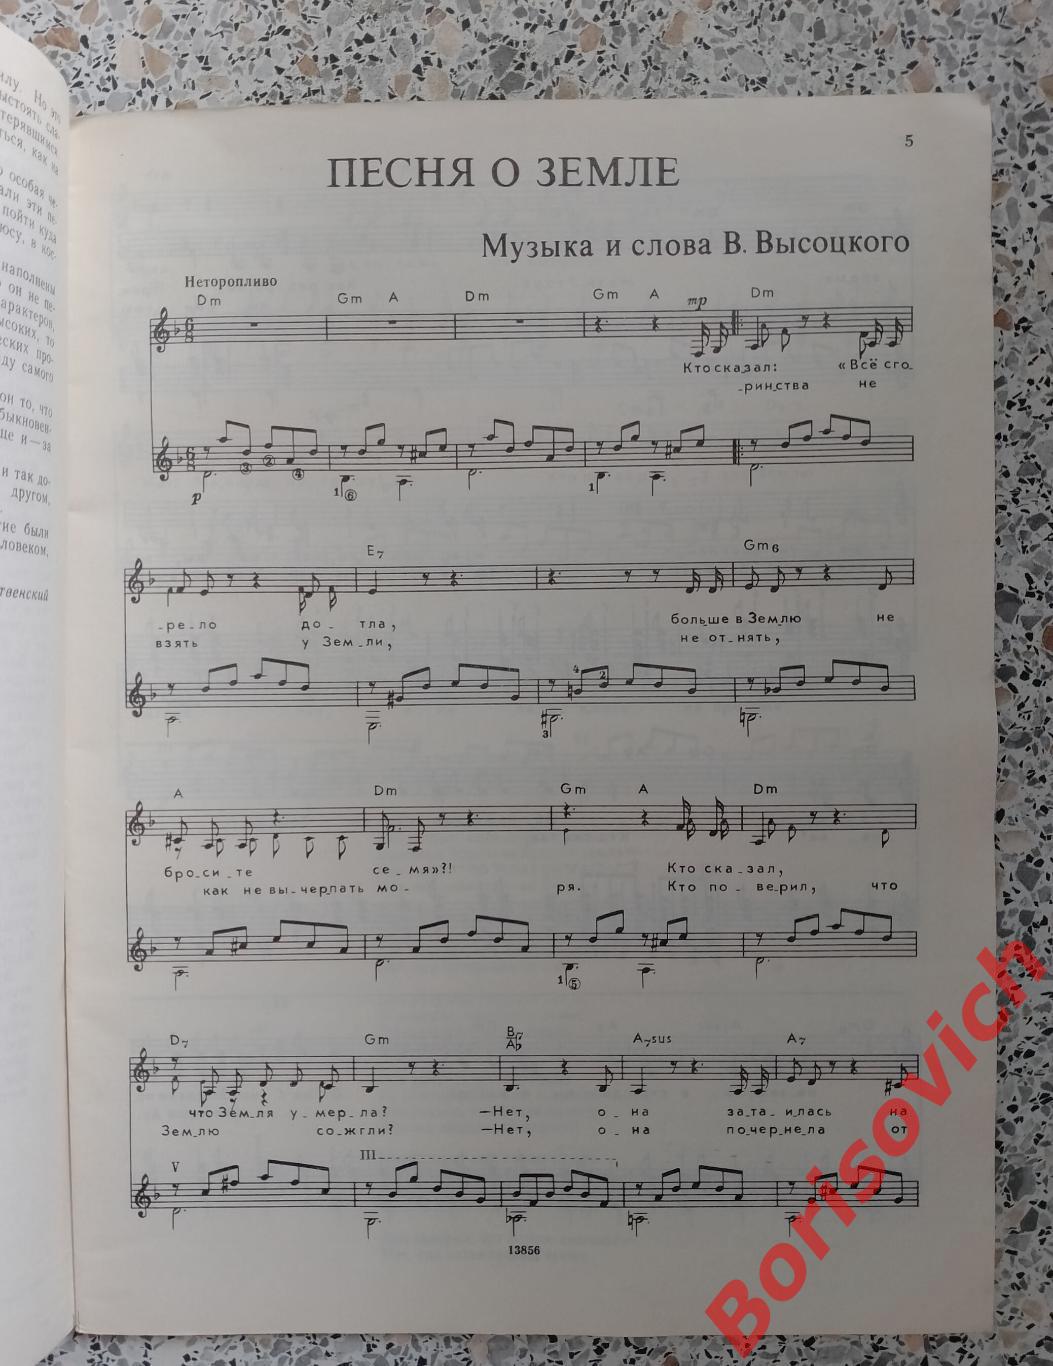 ПОЁТ ВЛАДИМИР ВЫСОЦКИЙ Песни для голоса в сопровождении гитары 1989 г 64 стр. 41 1